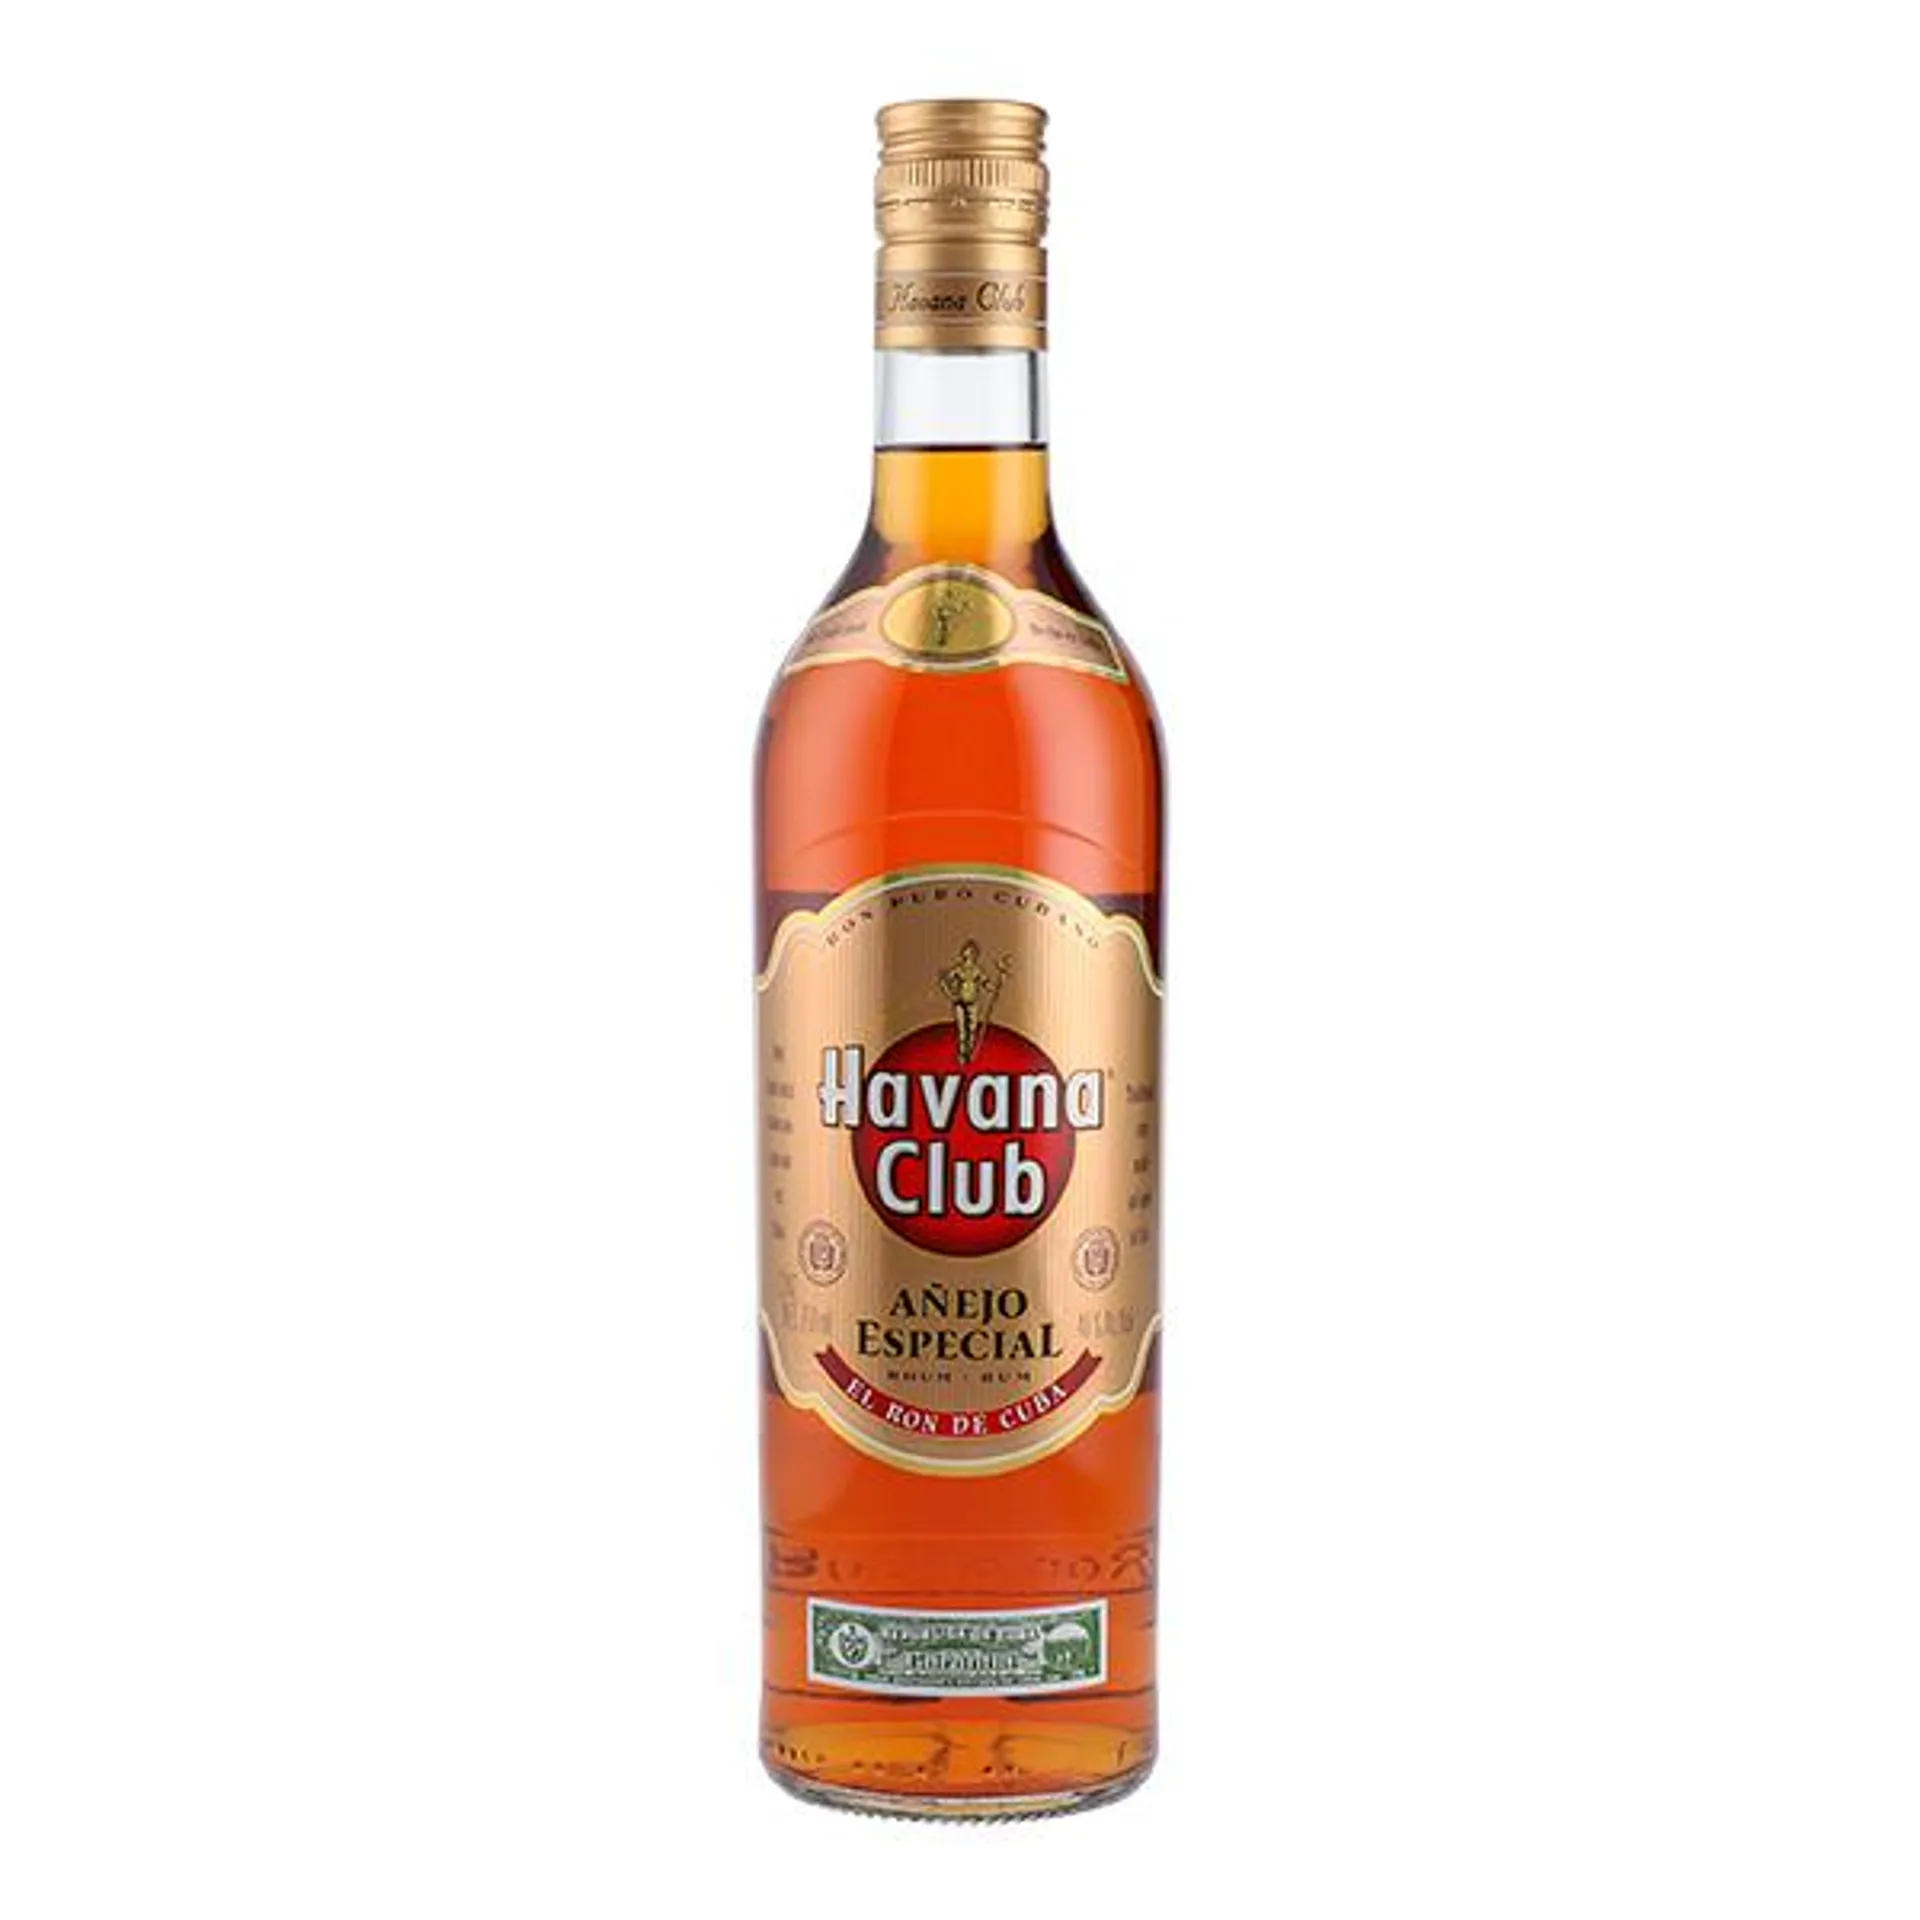 Ron Havana Club Añejo Especial 750 ml